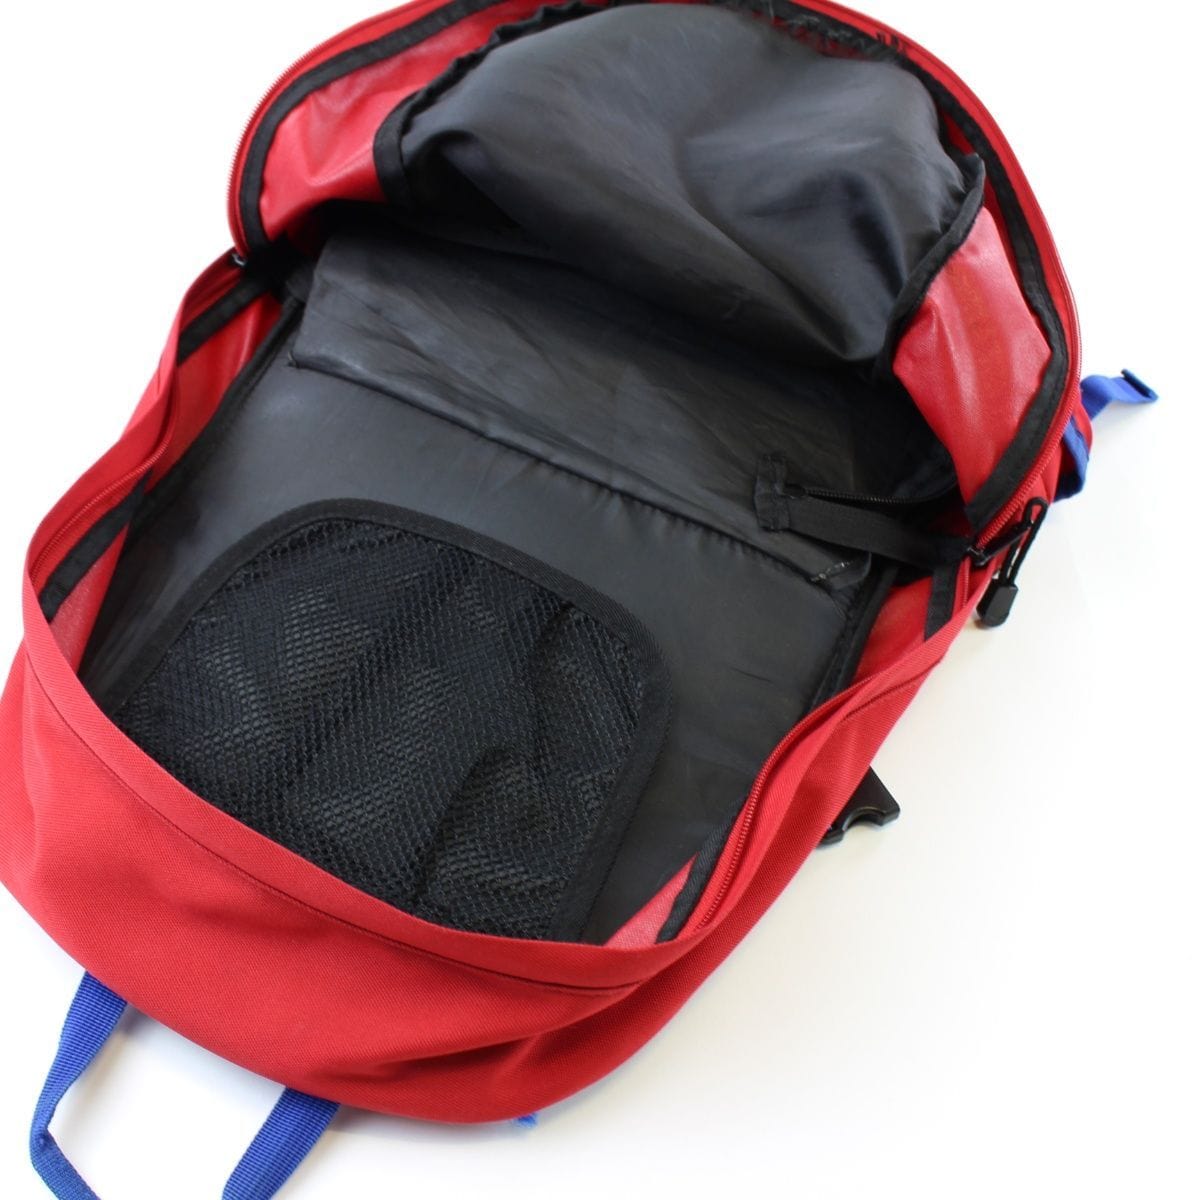 Supreme Guide 28 Backpack Red Blue - SaruGeneral